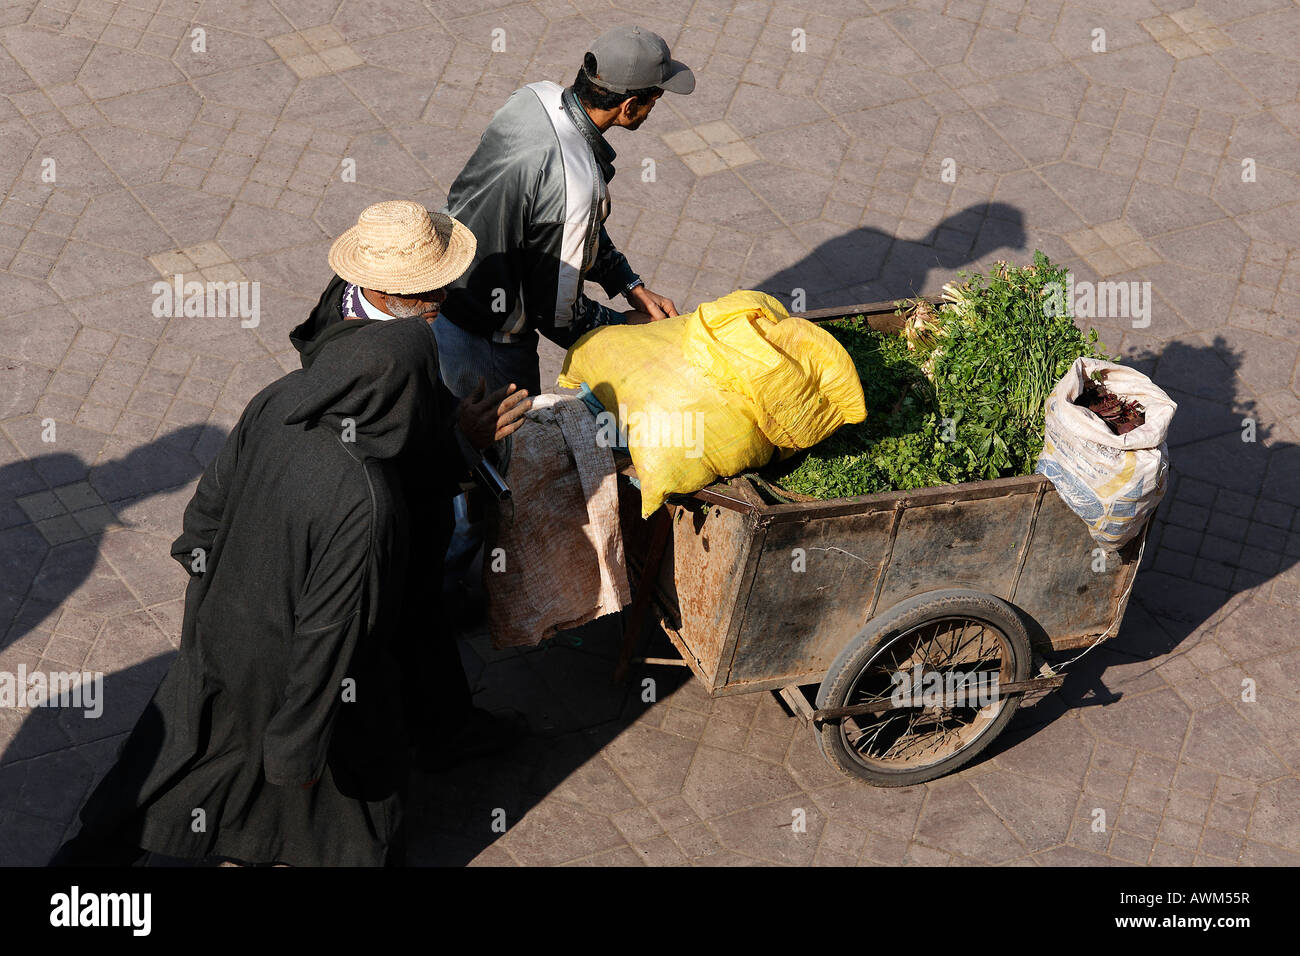 Gli uomini spingendo il carrello caricato con materie vegetali verdi e sacchi, Djemaa el Fna a Marrakech, Marocco, Africa Foto Stock